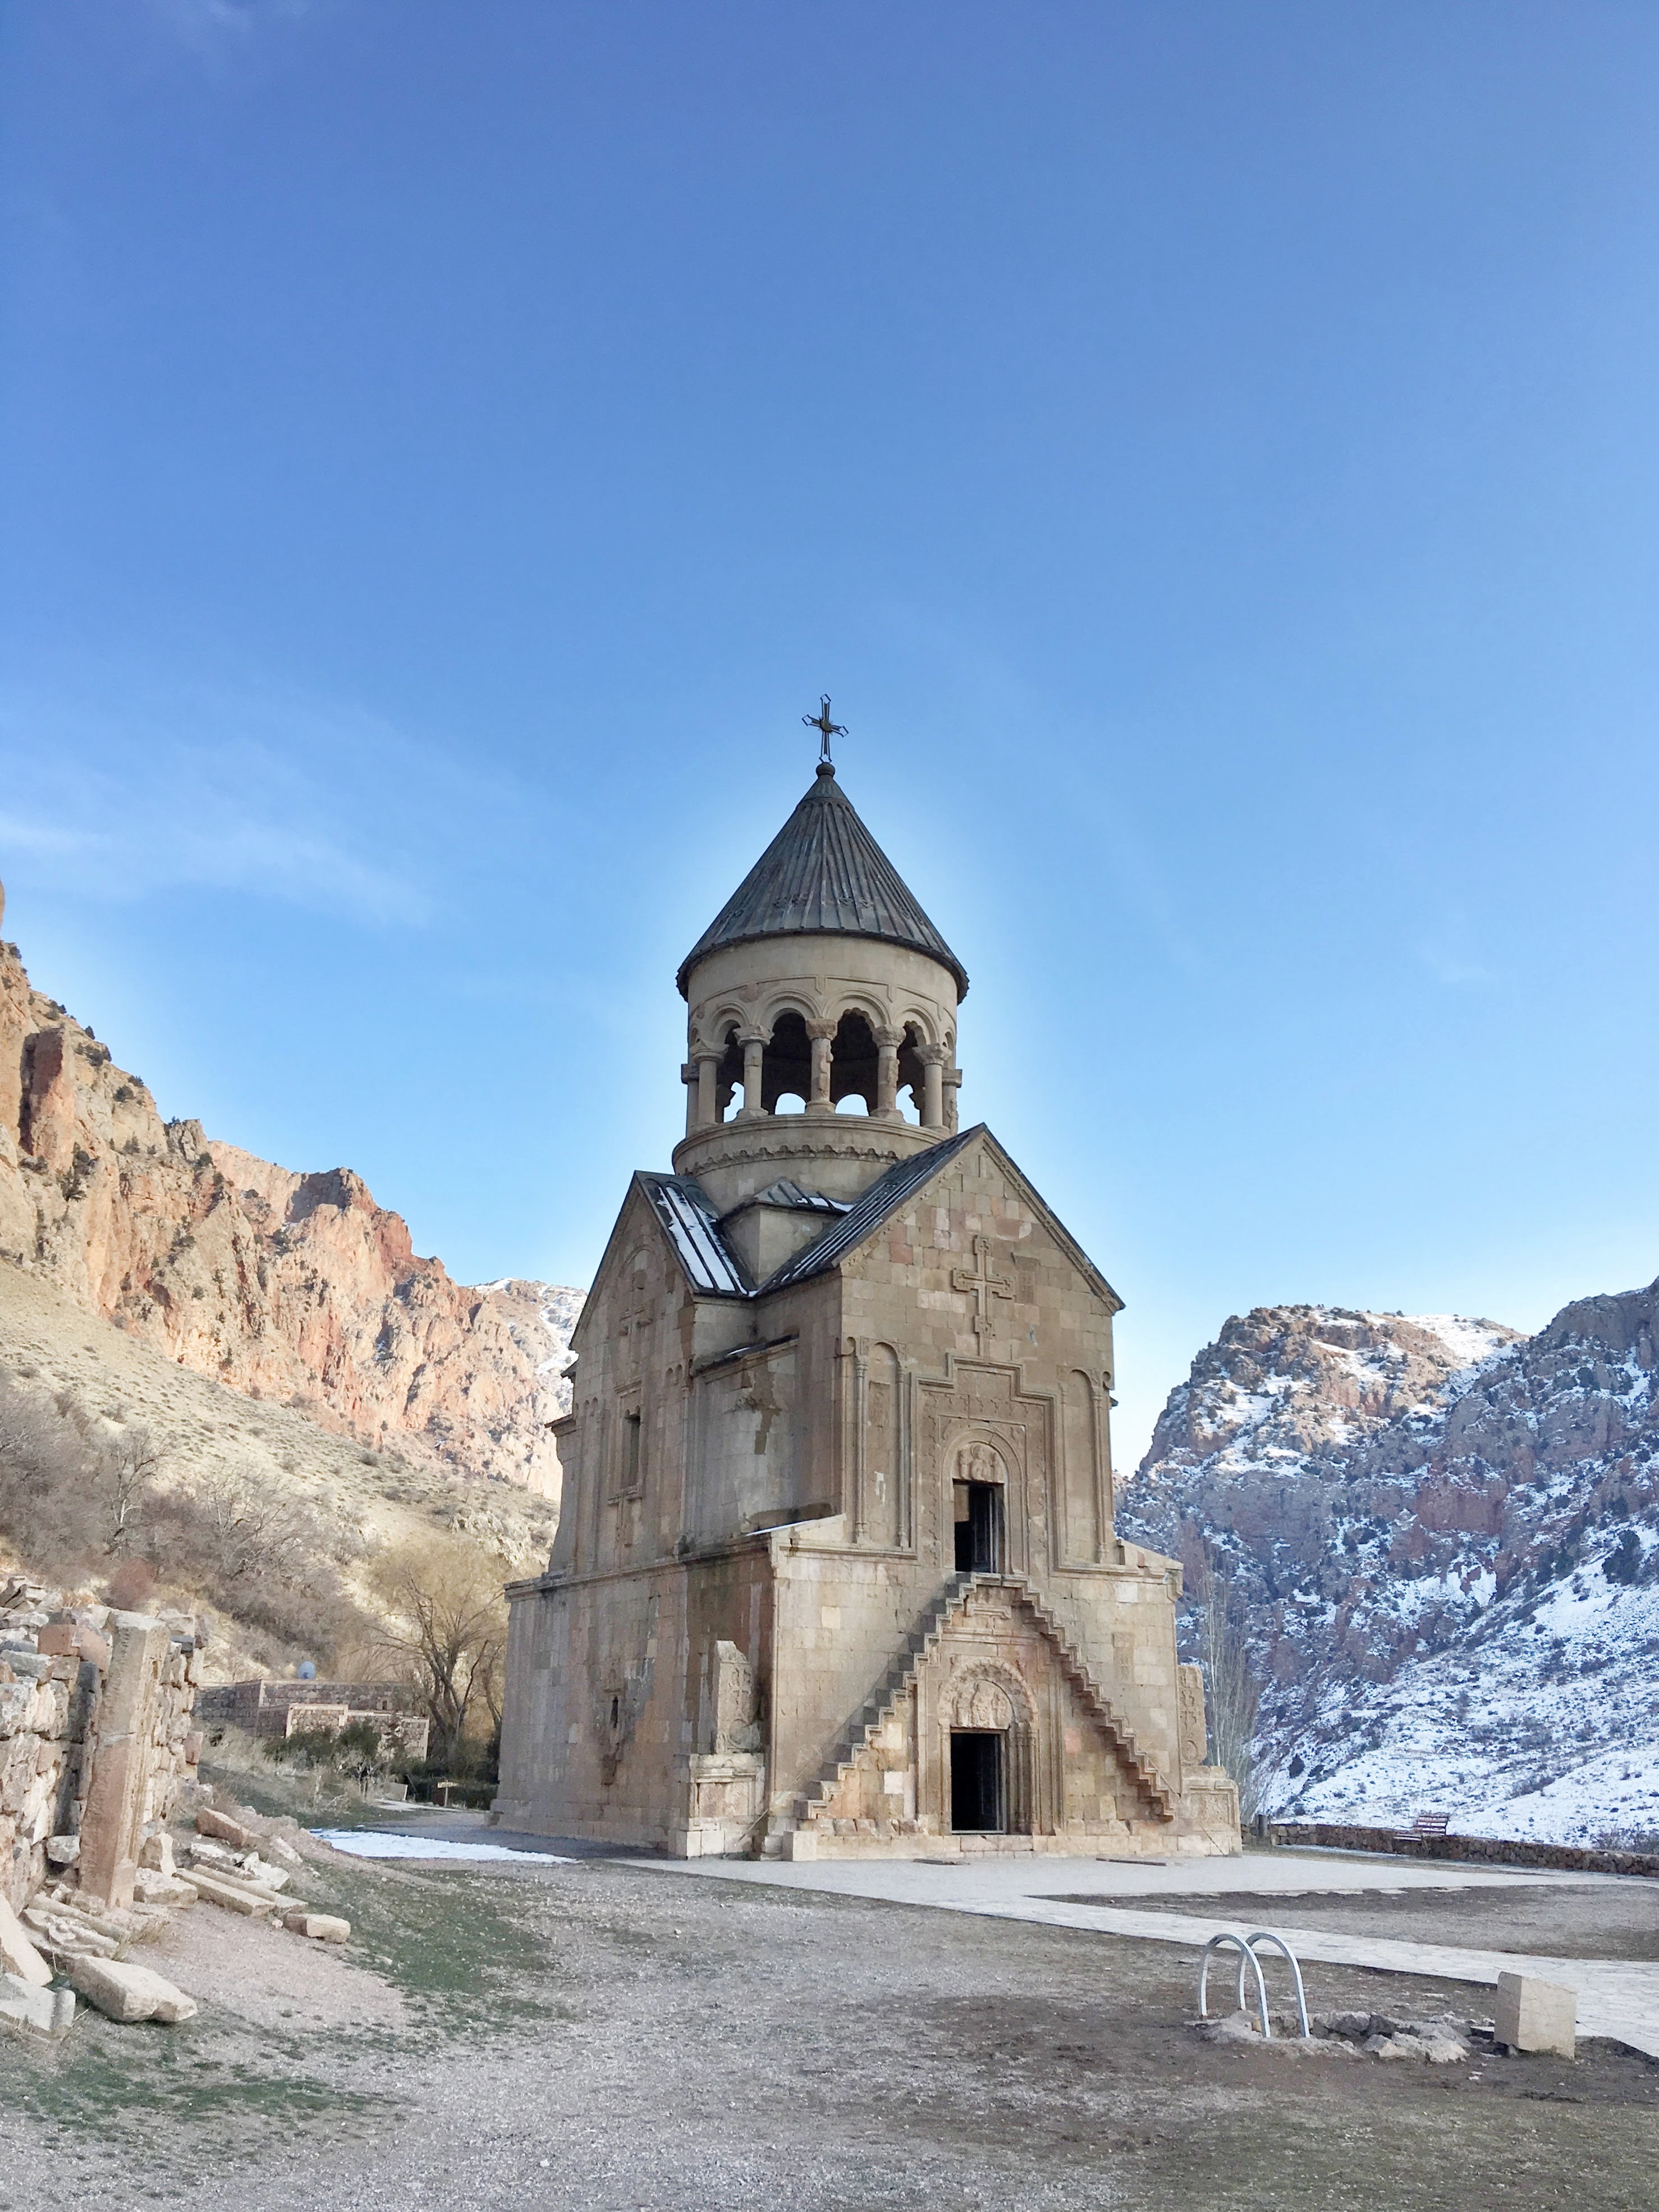 Ancient church in Armenia